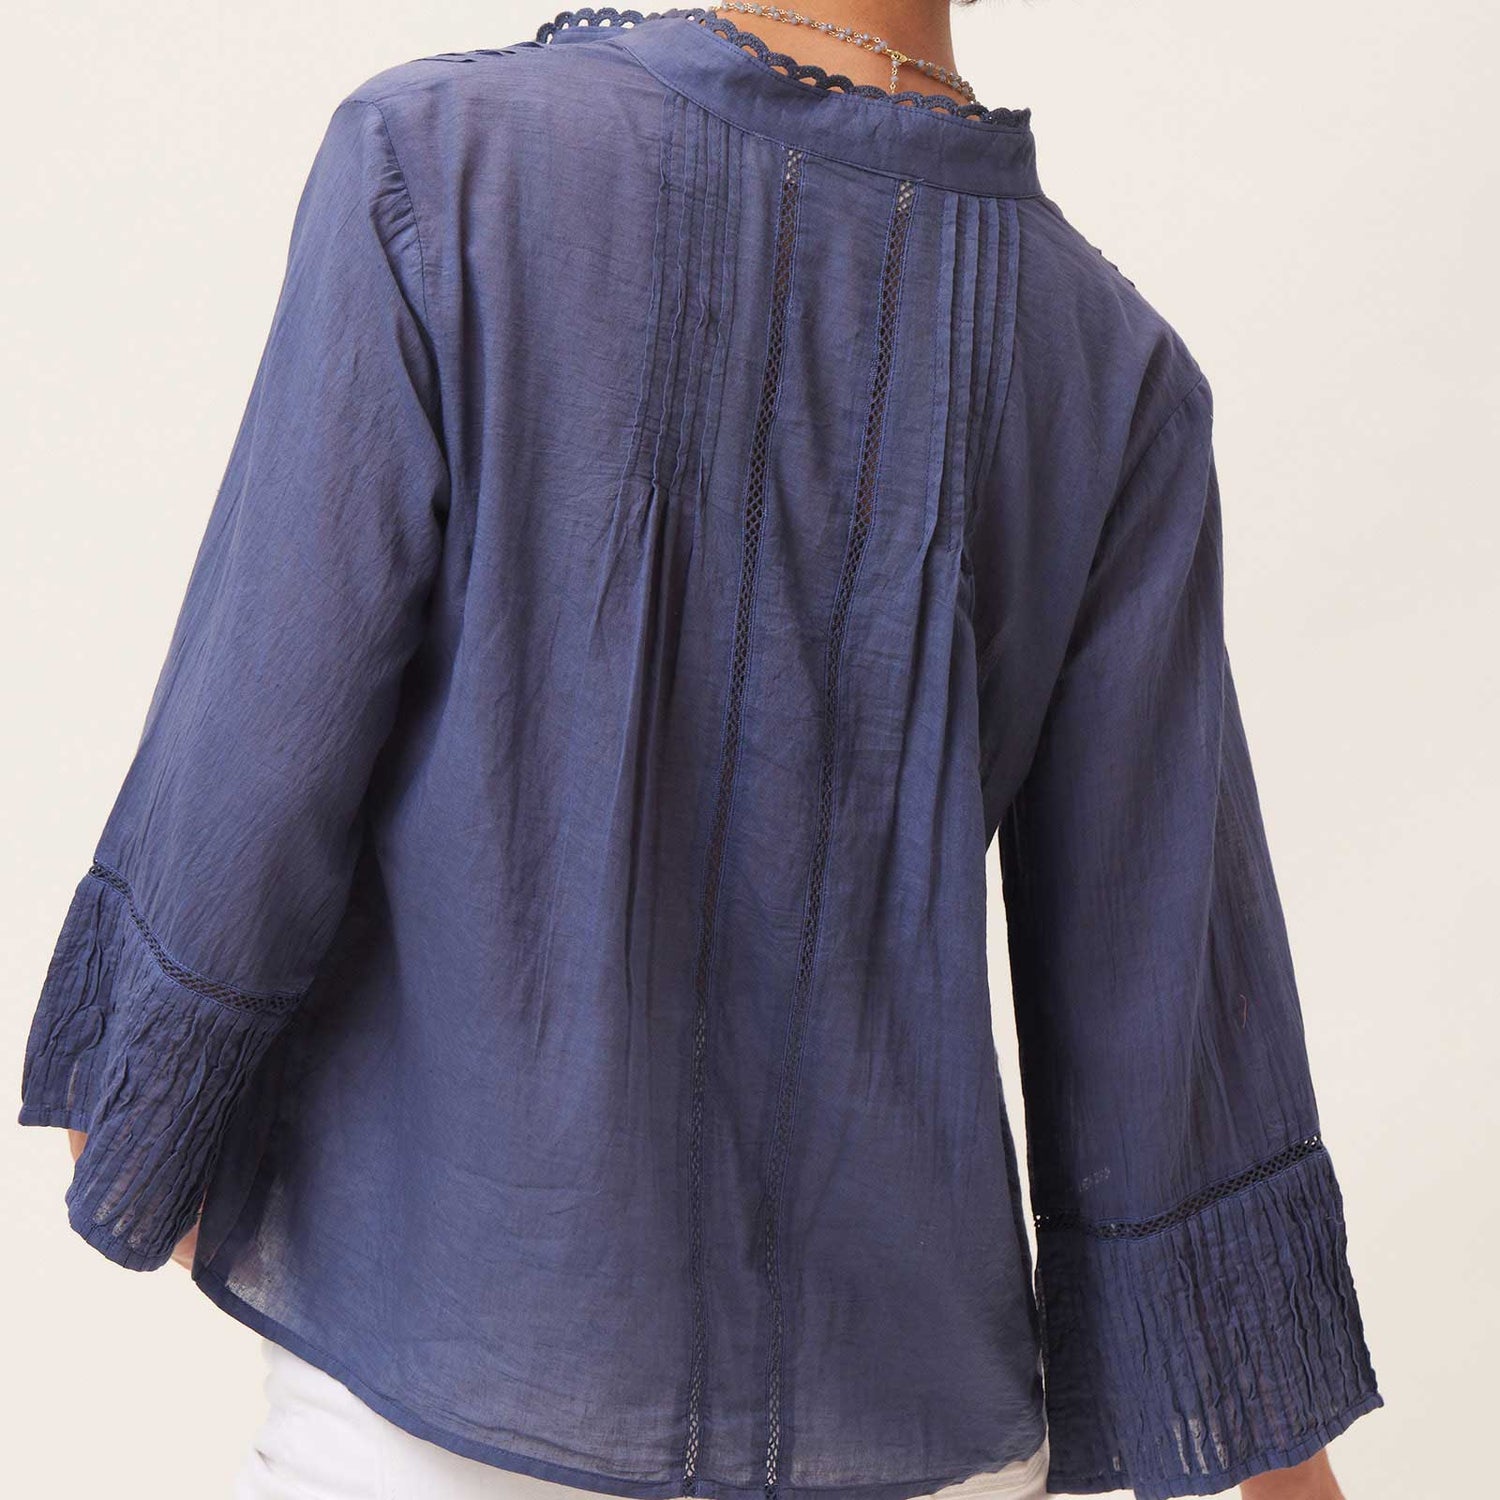 Zudio blue cotton blouse  Cotton blouses, Peasant style, Navy blue shirts